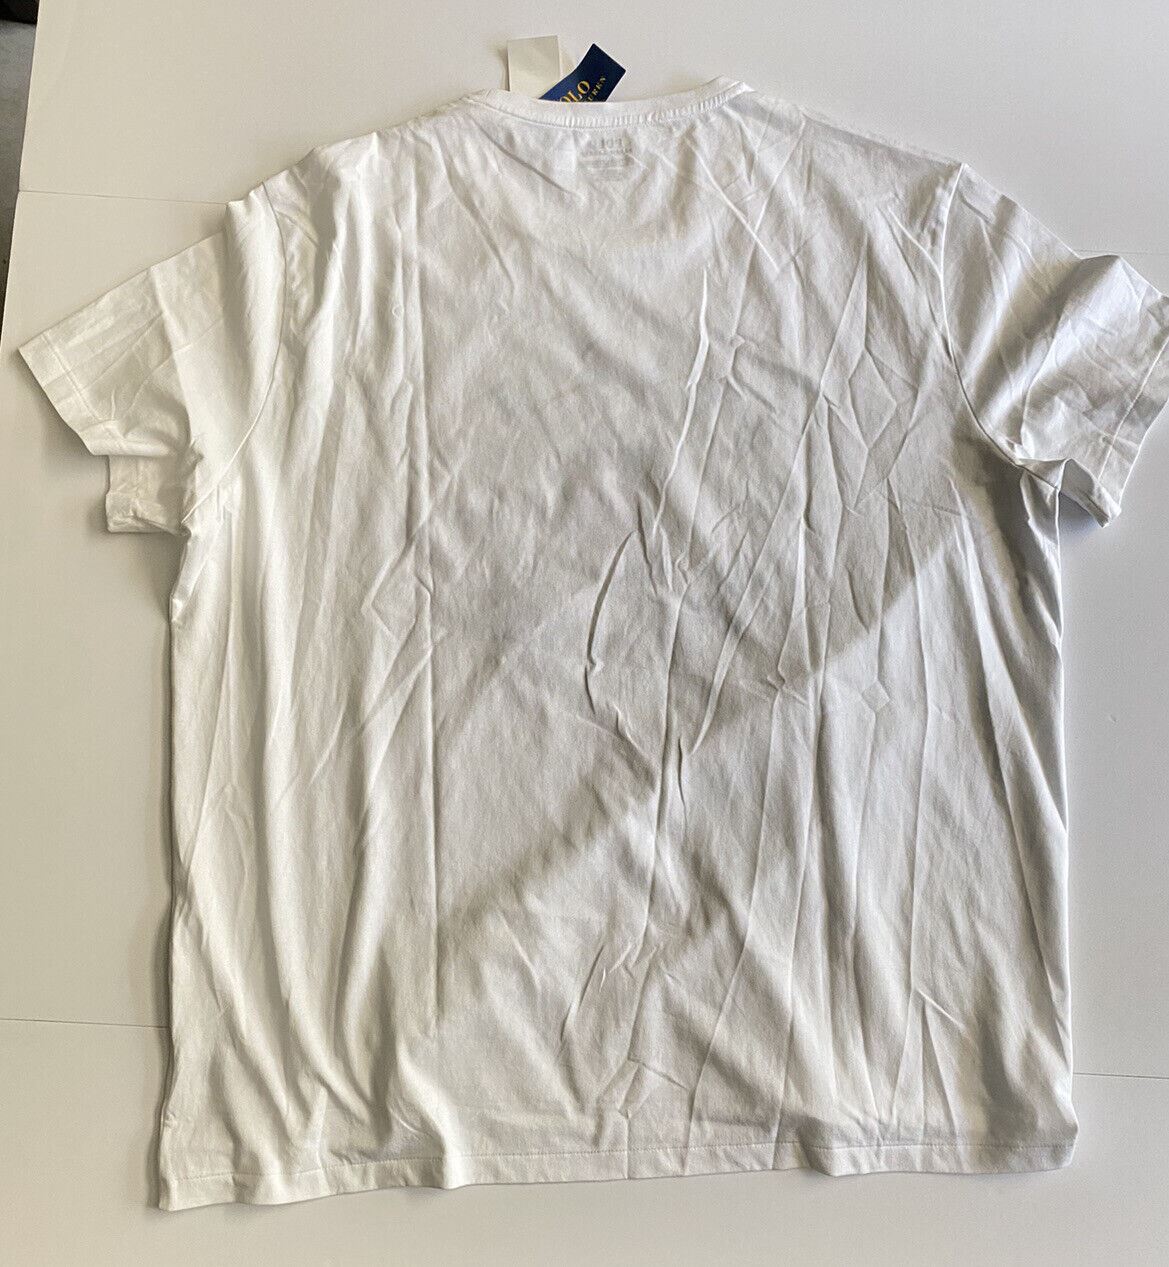 NWT Polo Ralph Lauren T-Shirt White 2XL/2TG